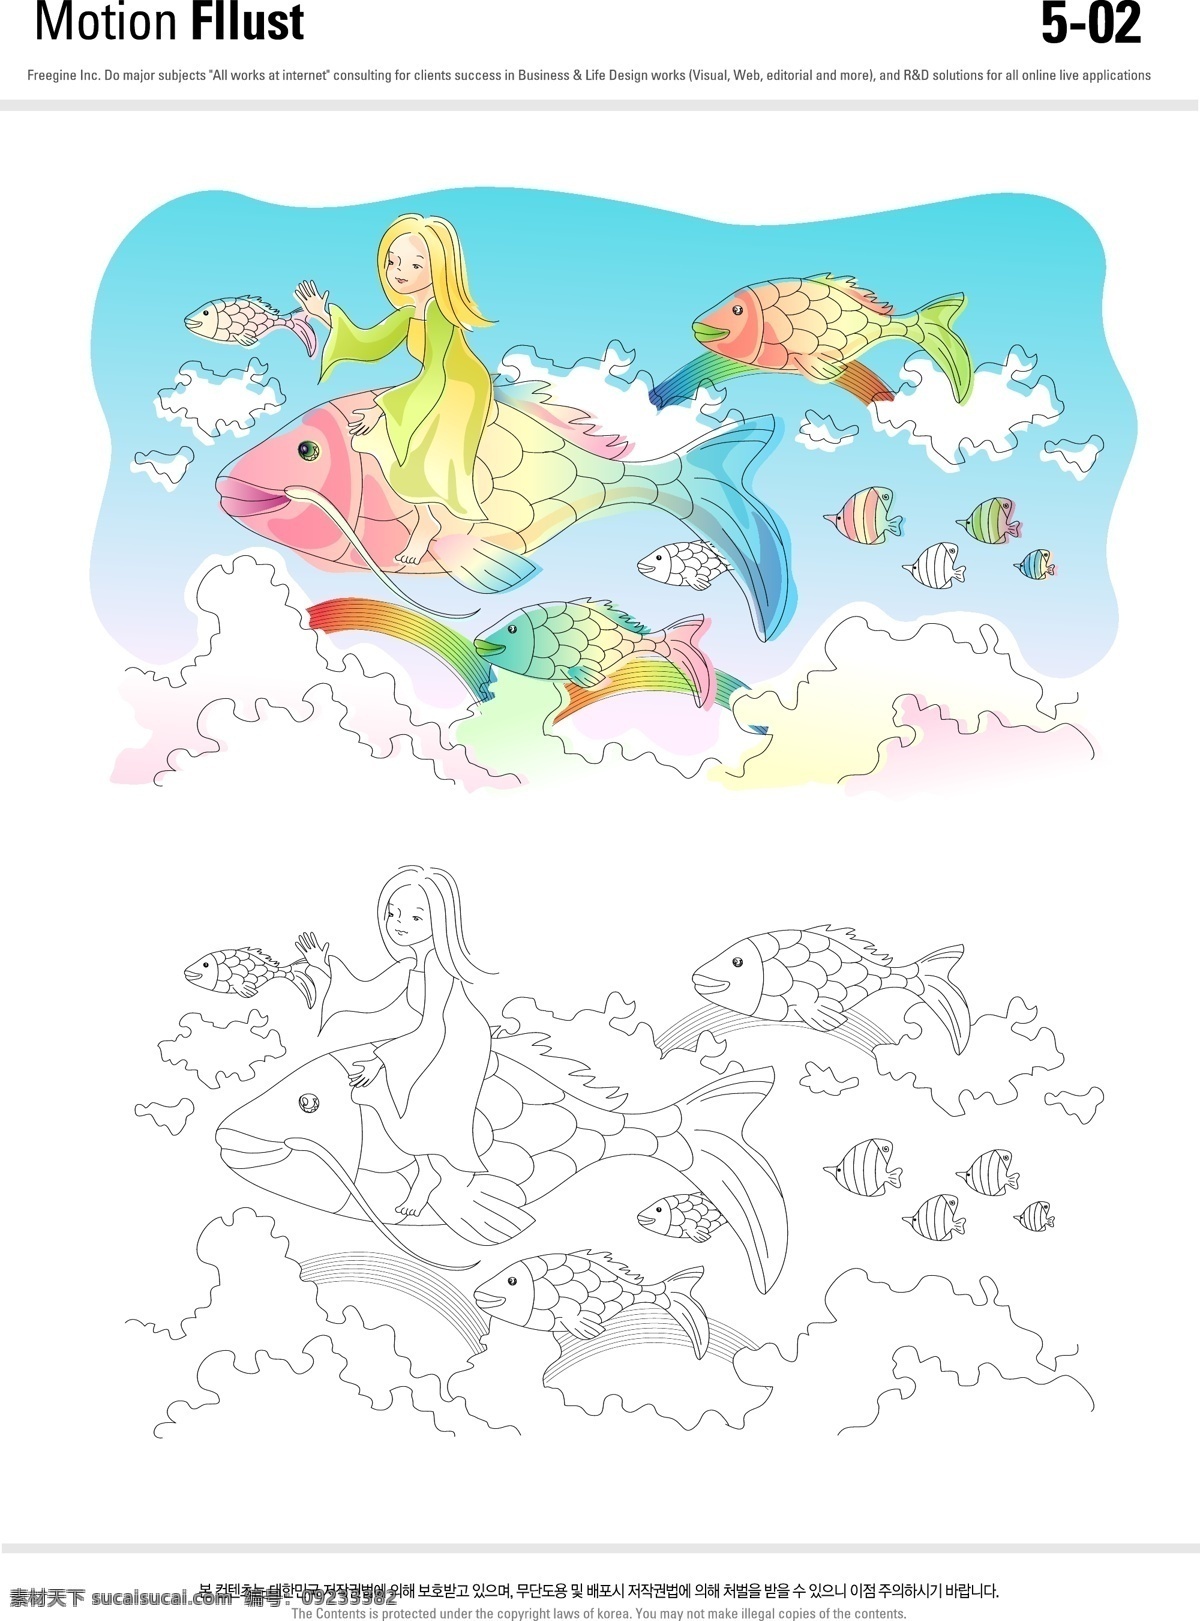 儿童 梦幻 插画 彩虹 动漫动画 风景漫画 海洋世界 矢量插画 飞鱼 海洋云朵 彩色的鱼 卡通 动漫 可爱